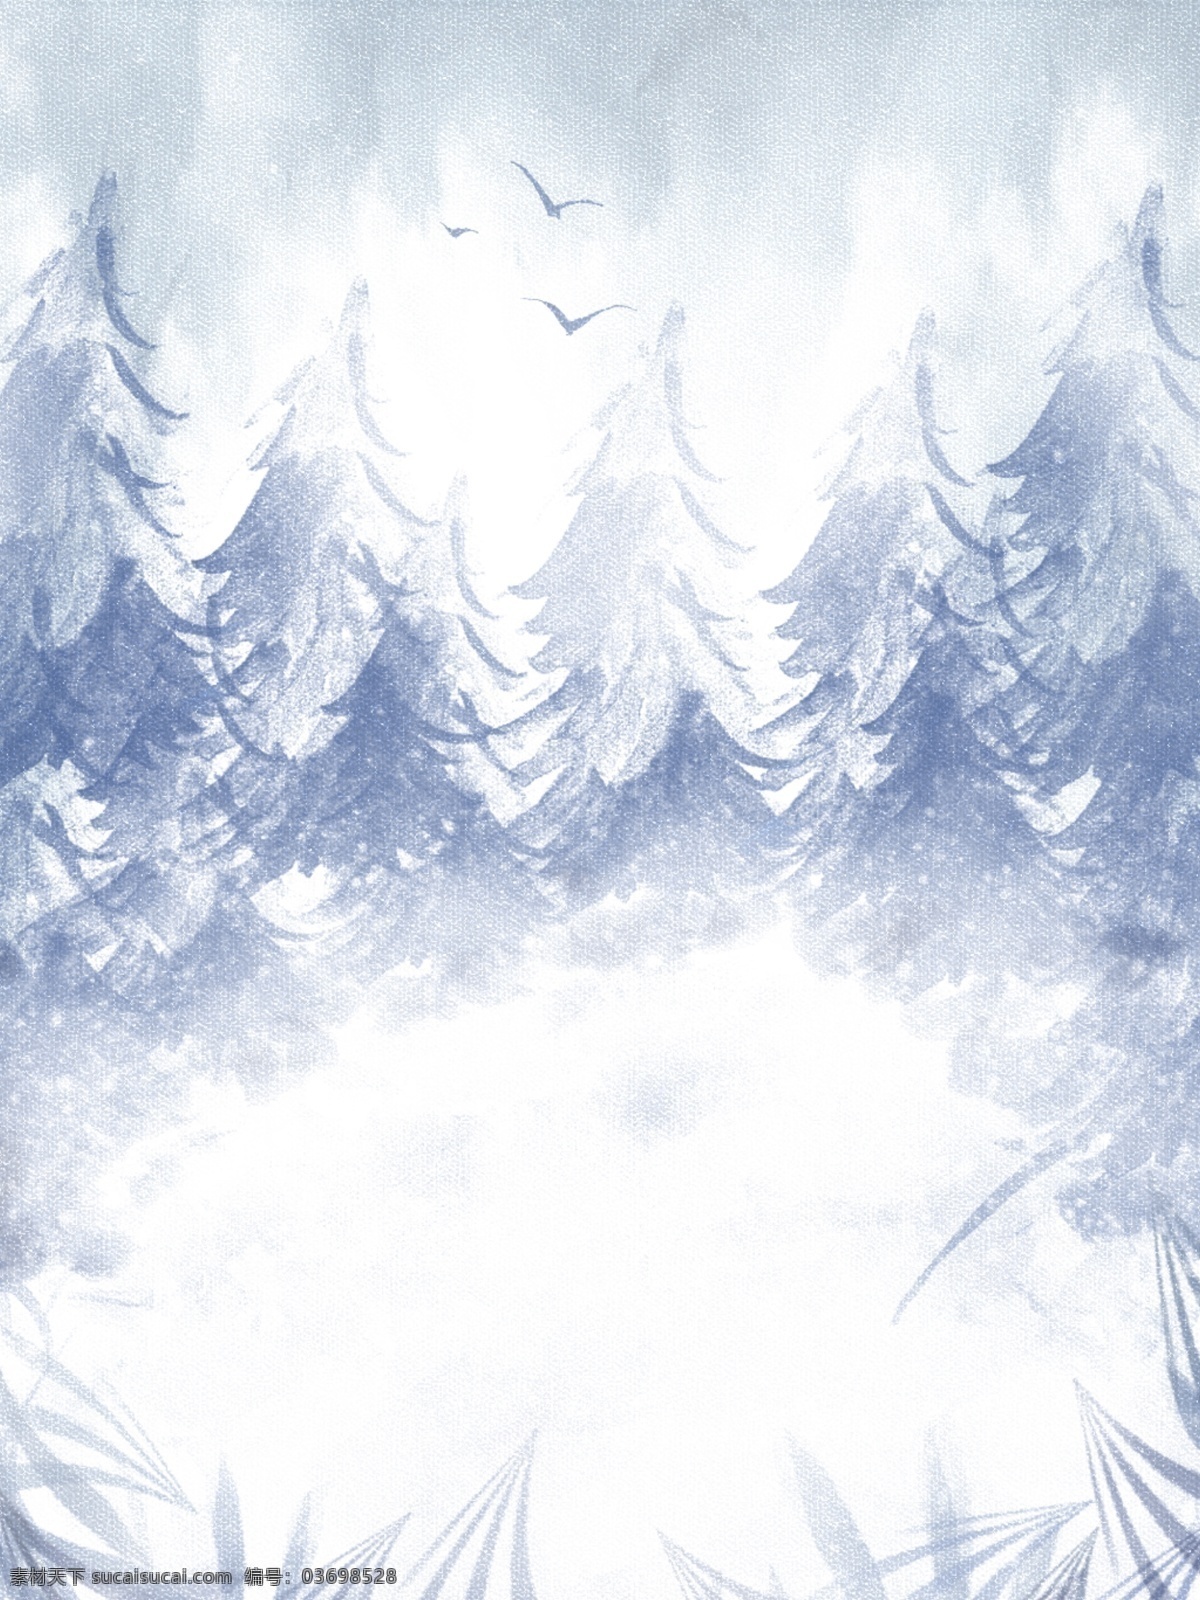 原创 手绘 铅笔画 蓝色 雪地 森林 海报 背景 森林背景 抽象背景 下雪 冬天背景 冬季背景 雪地背景 寒冷背景